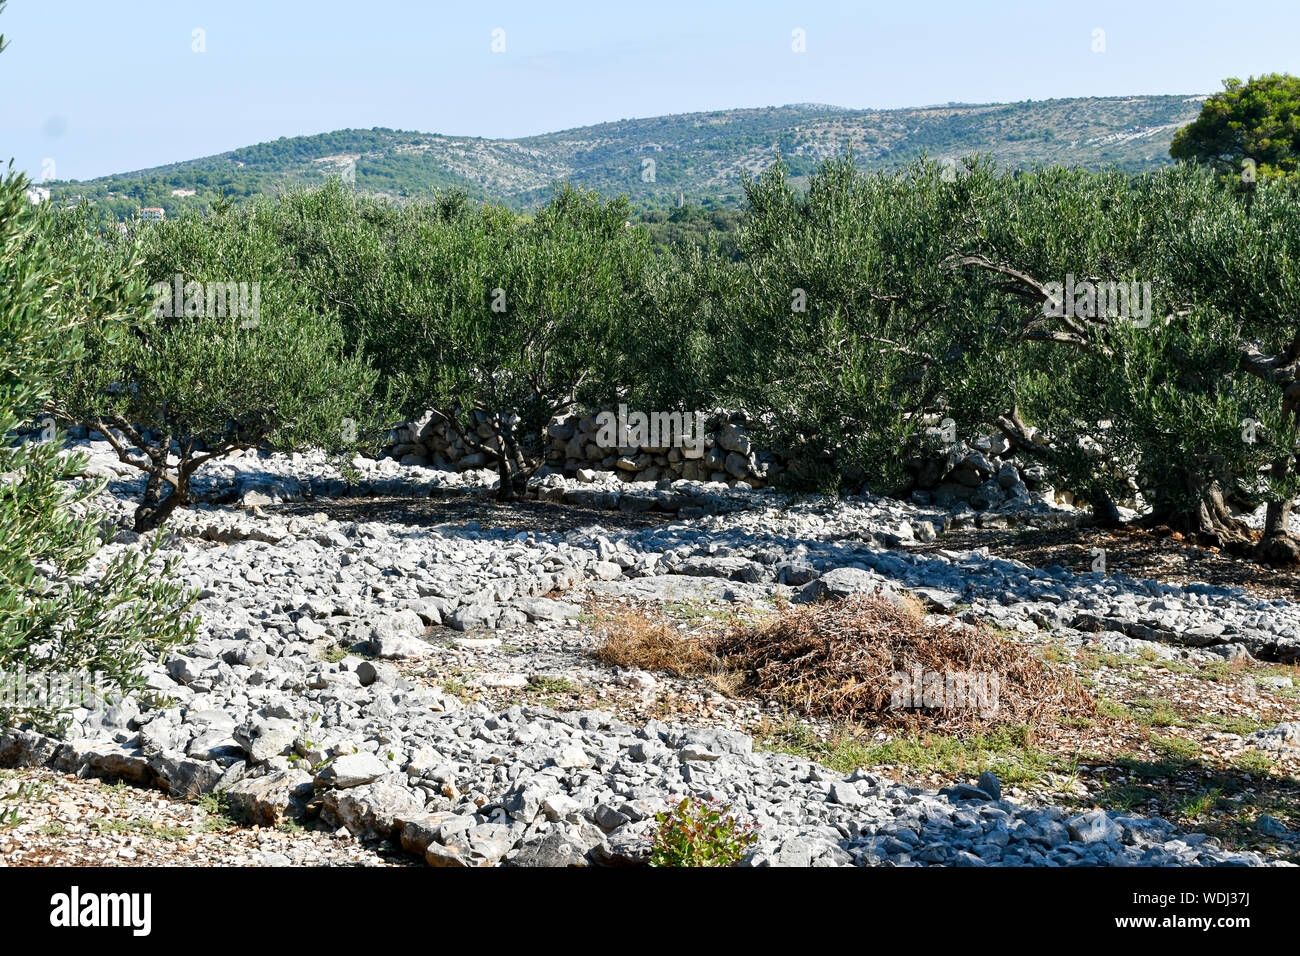 Los olivos crecen en campo con paredes de piedra. Foto de stock